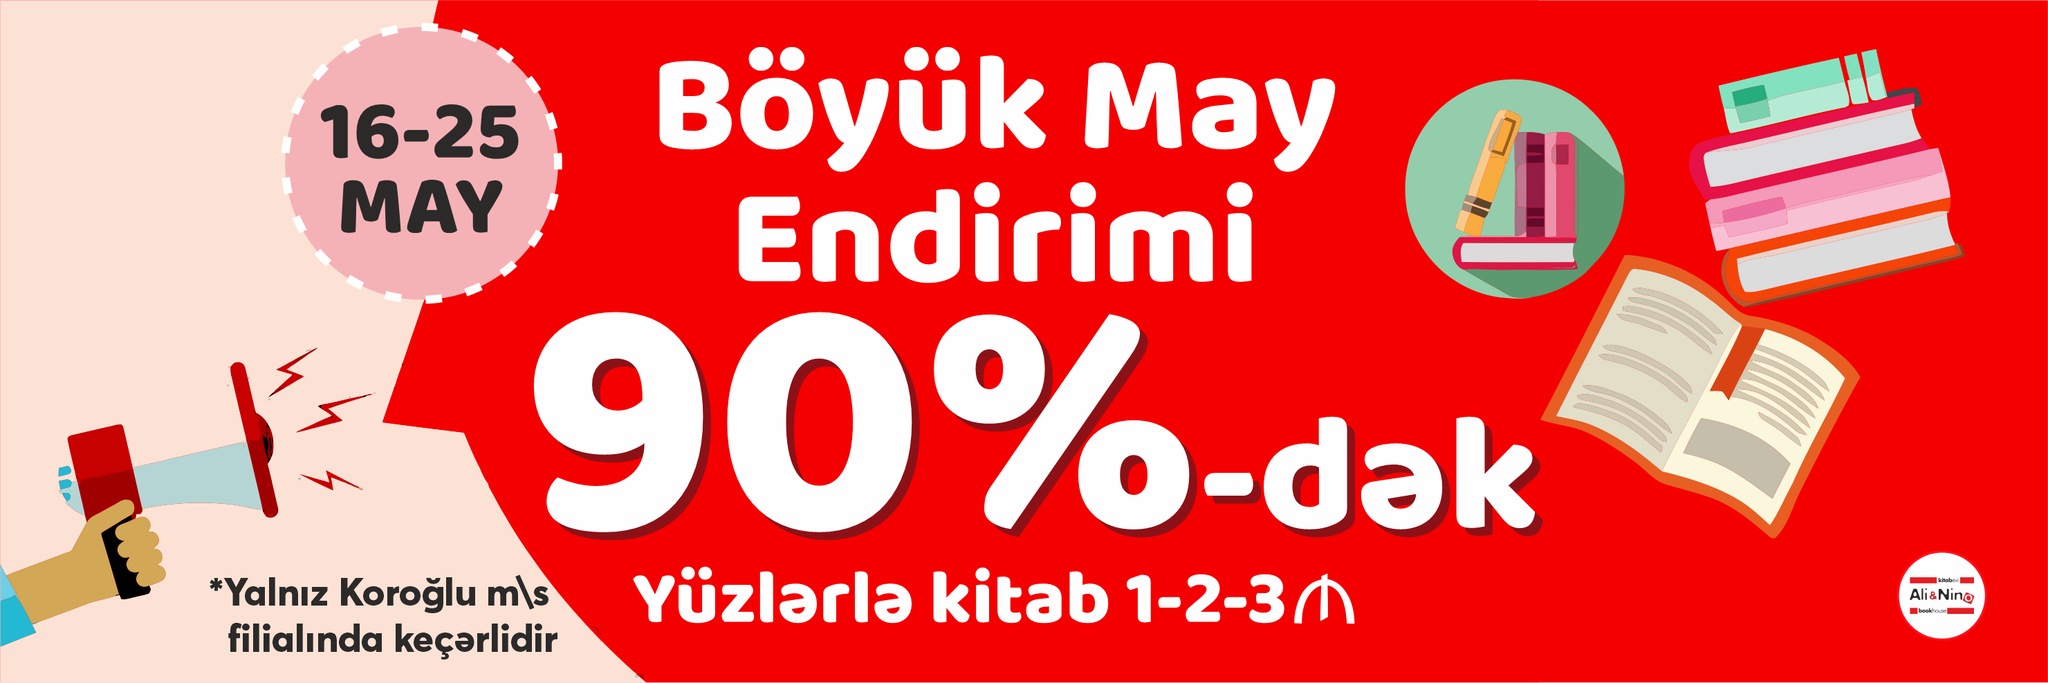 Koroğlu filialında bütün məhsullara 20-90% endirim!